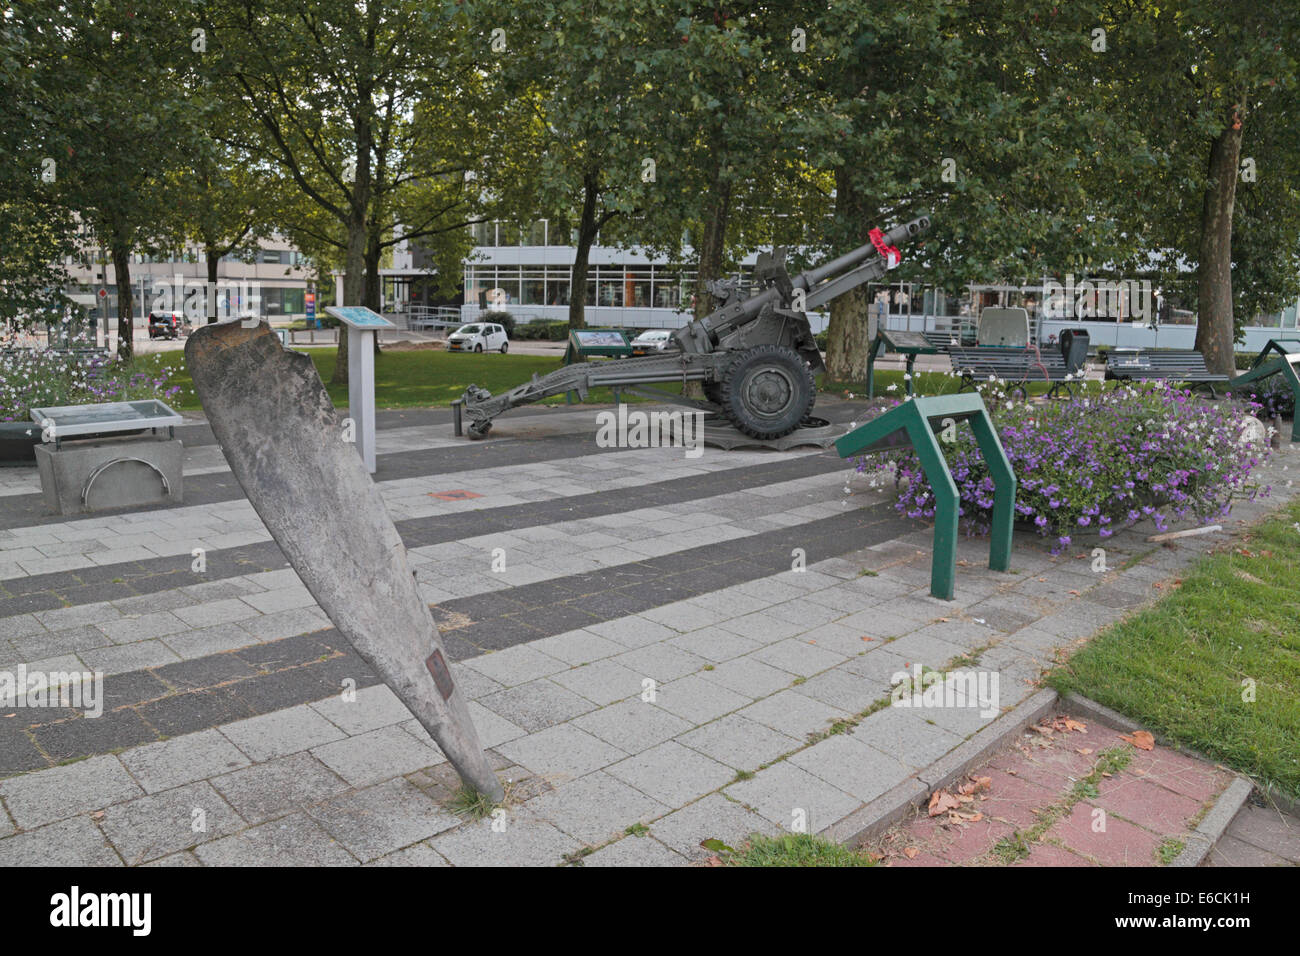 Il monumento Airborne area vicino al John Frost ponte, tenuto durante l'operazione Market Garden nel 1944, Arnhem, Paesi Bassi. Foto Stock